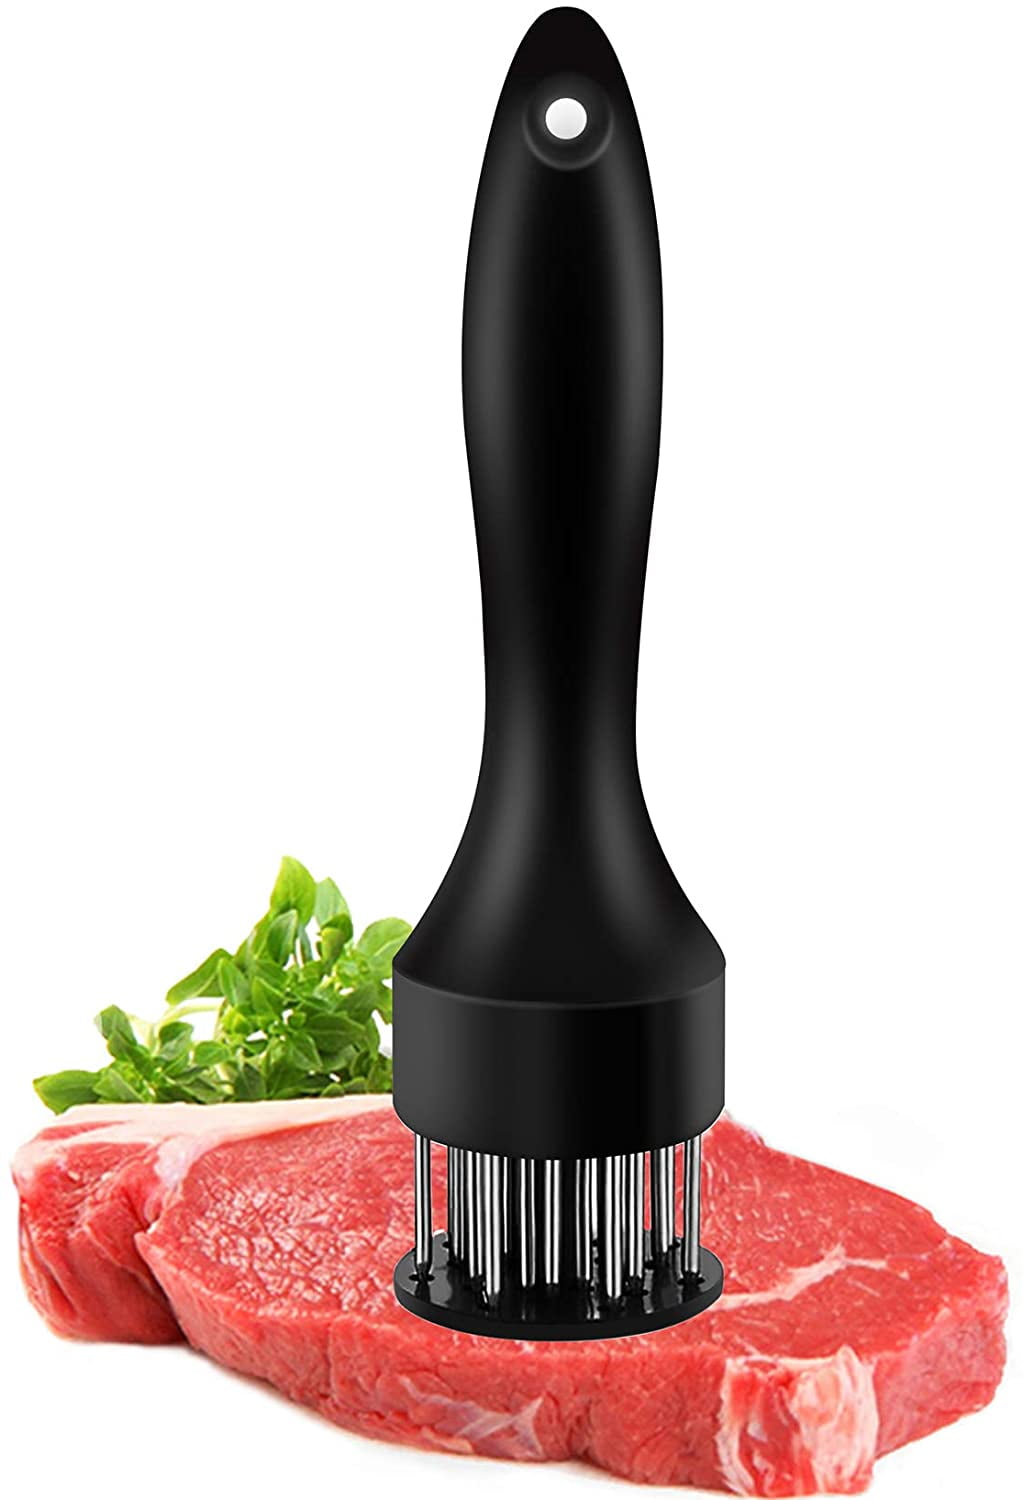 Black Meat Tenderizer Needle,Stainless Steel Meat Tenderizer Needle Kitchen Tool for Tenderizing Marinade Barbecue Steak,Steak Tenderizer Needle 